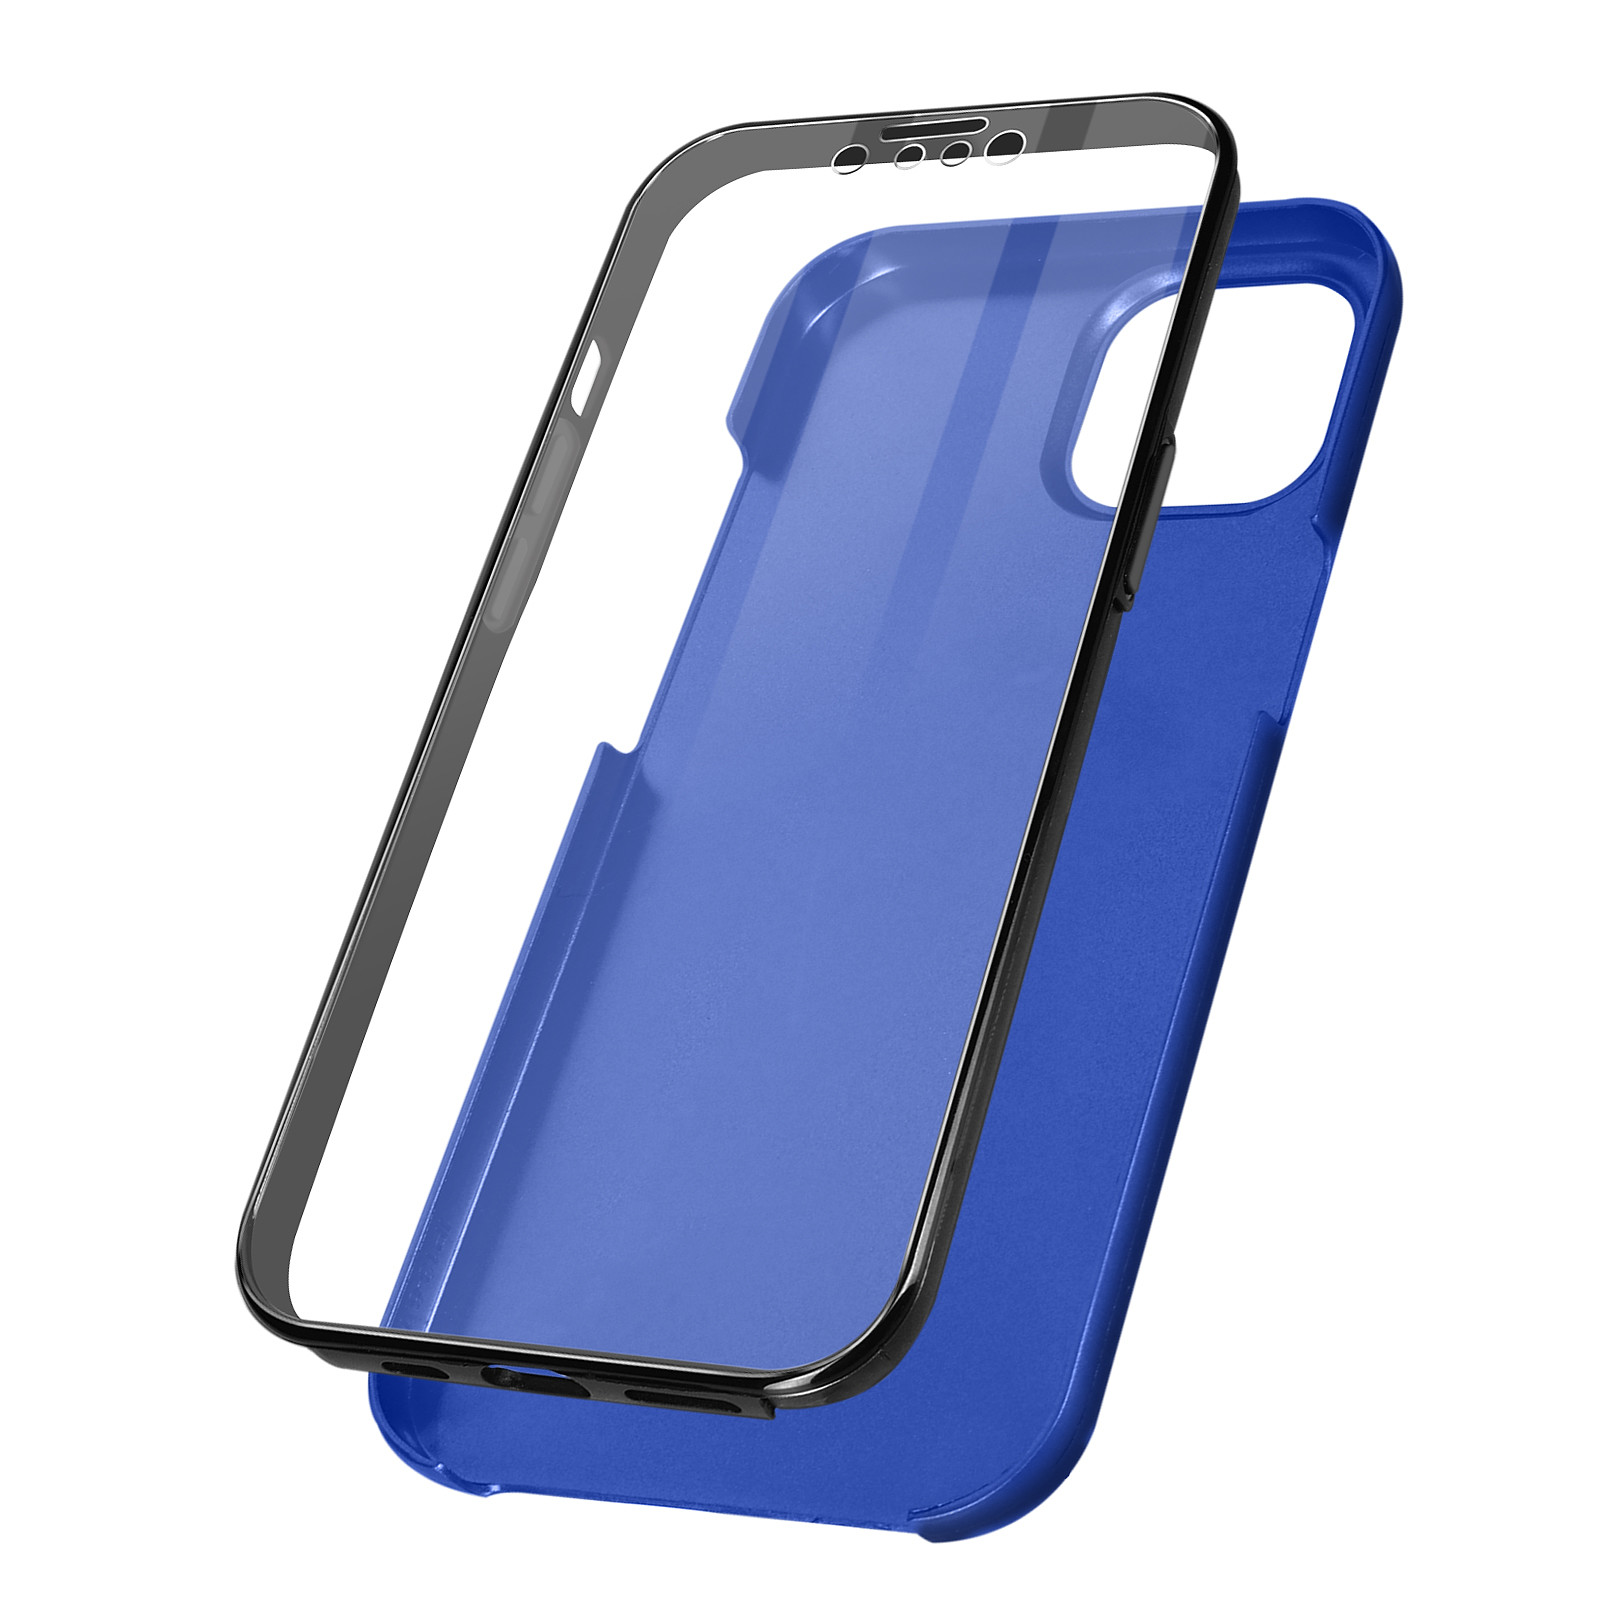 Avizar Coque pour iPhone 13 Pro Max Intègrale Arrière Rigide Bleu et Avant Souple Transparent - Coque telephone Avizar